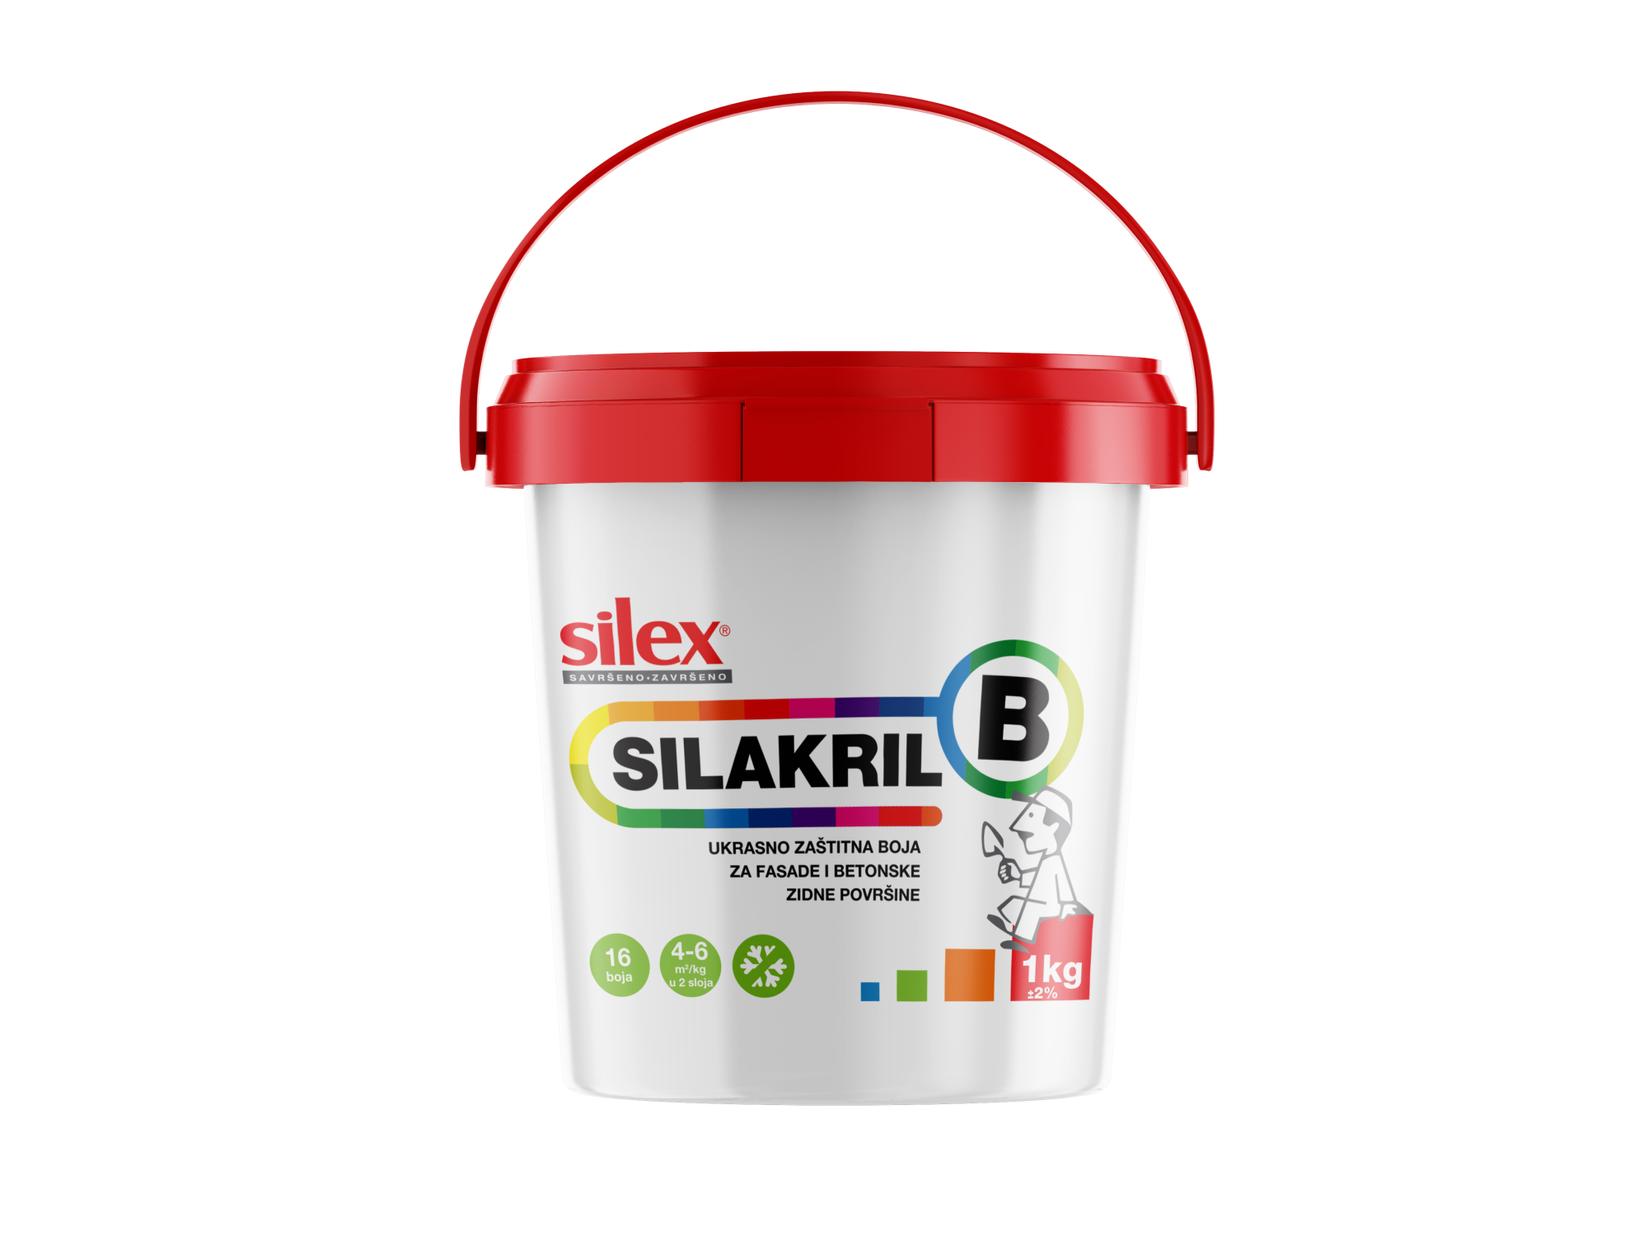 Silex SILAKRIL B kajsija 1 kg